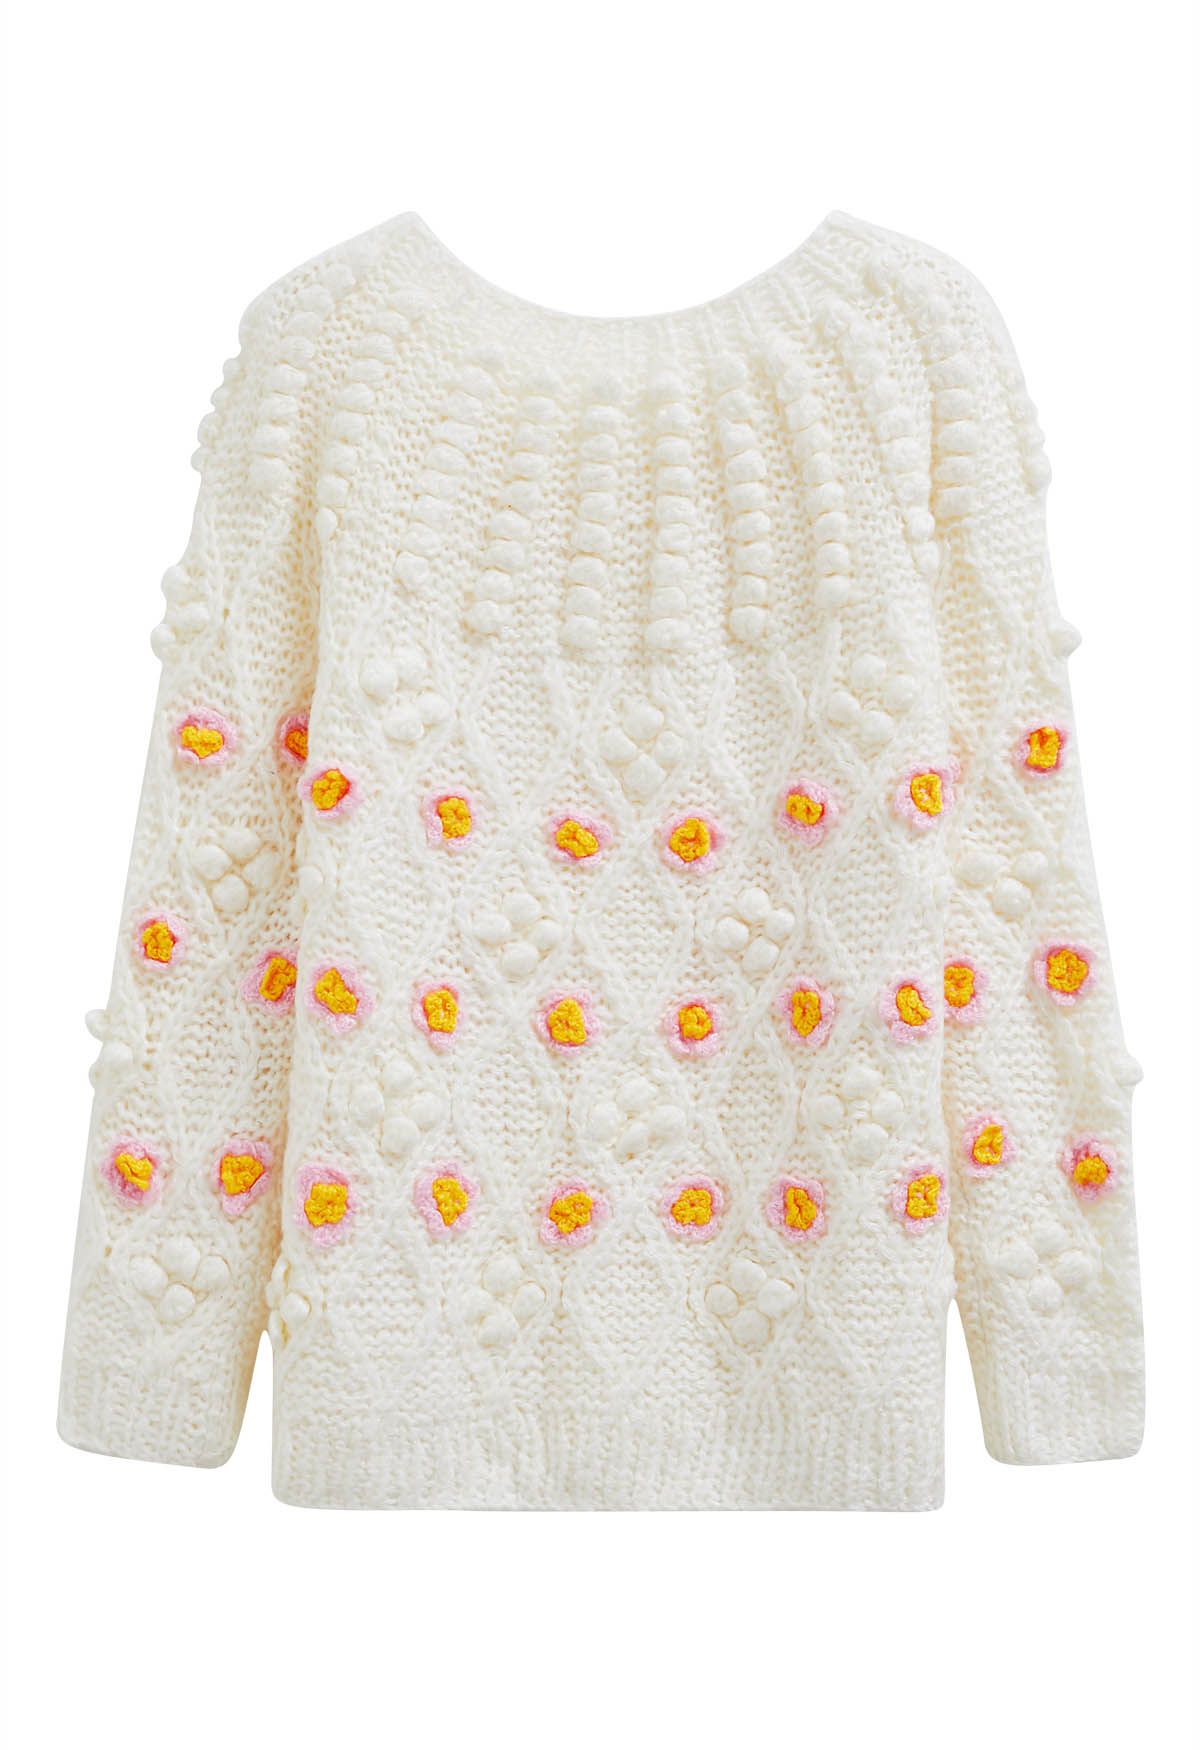 Suéter de punto grueso con flores y pompones